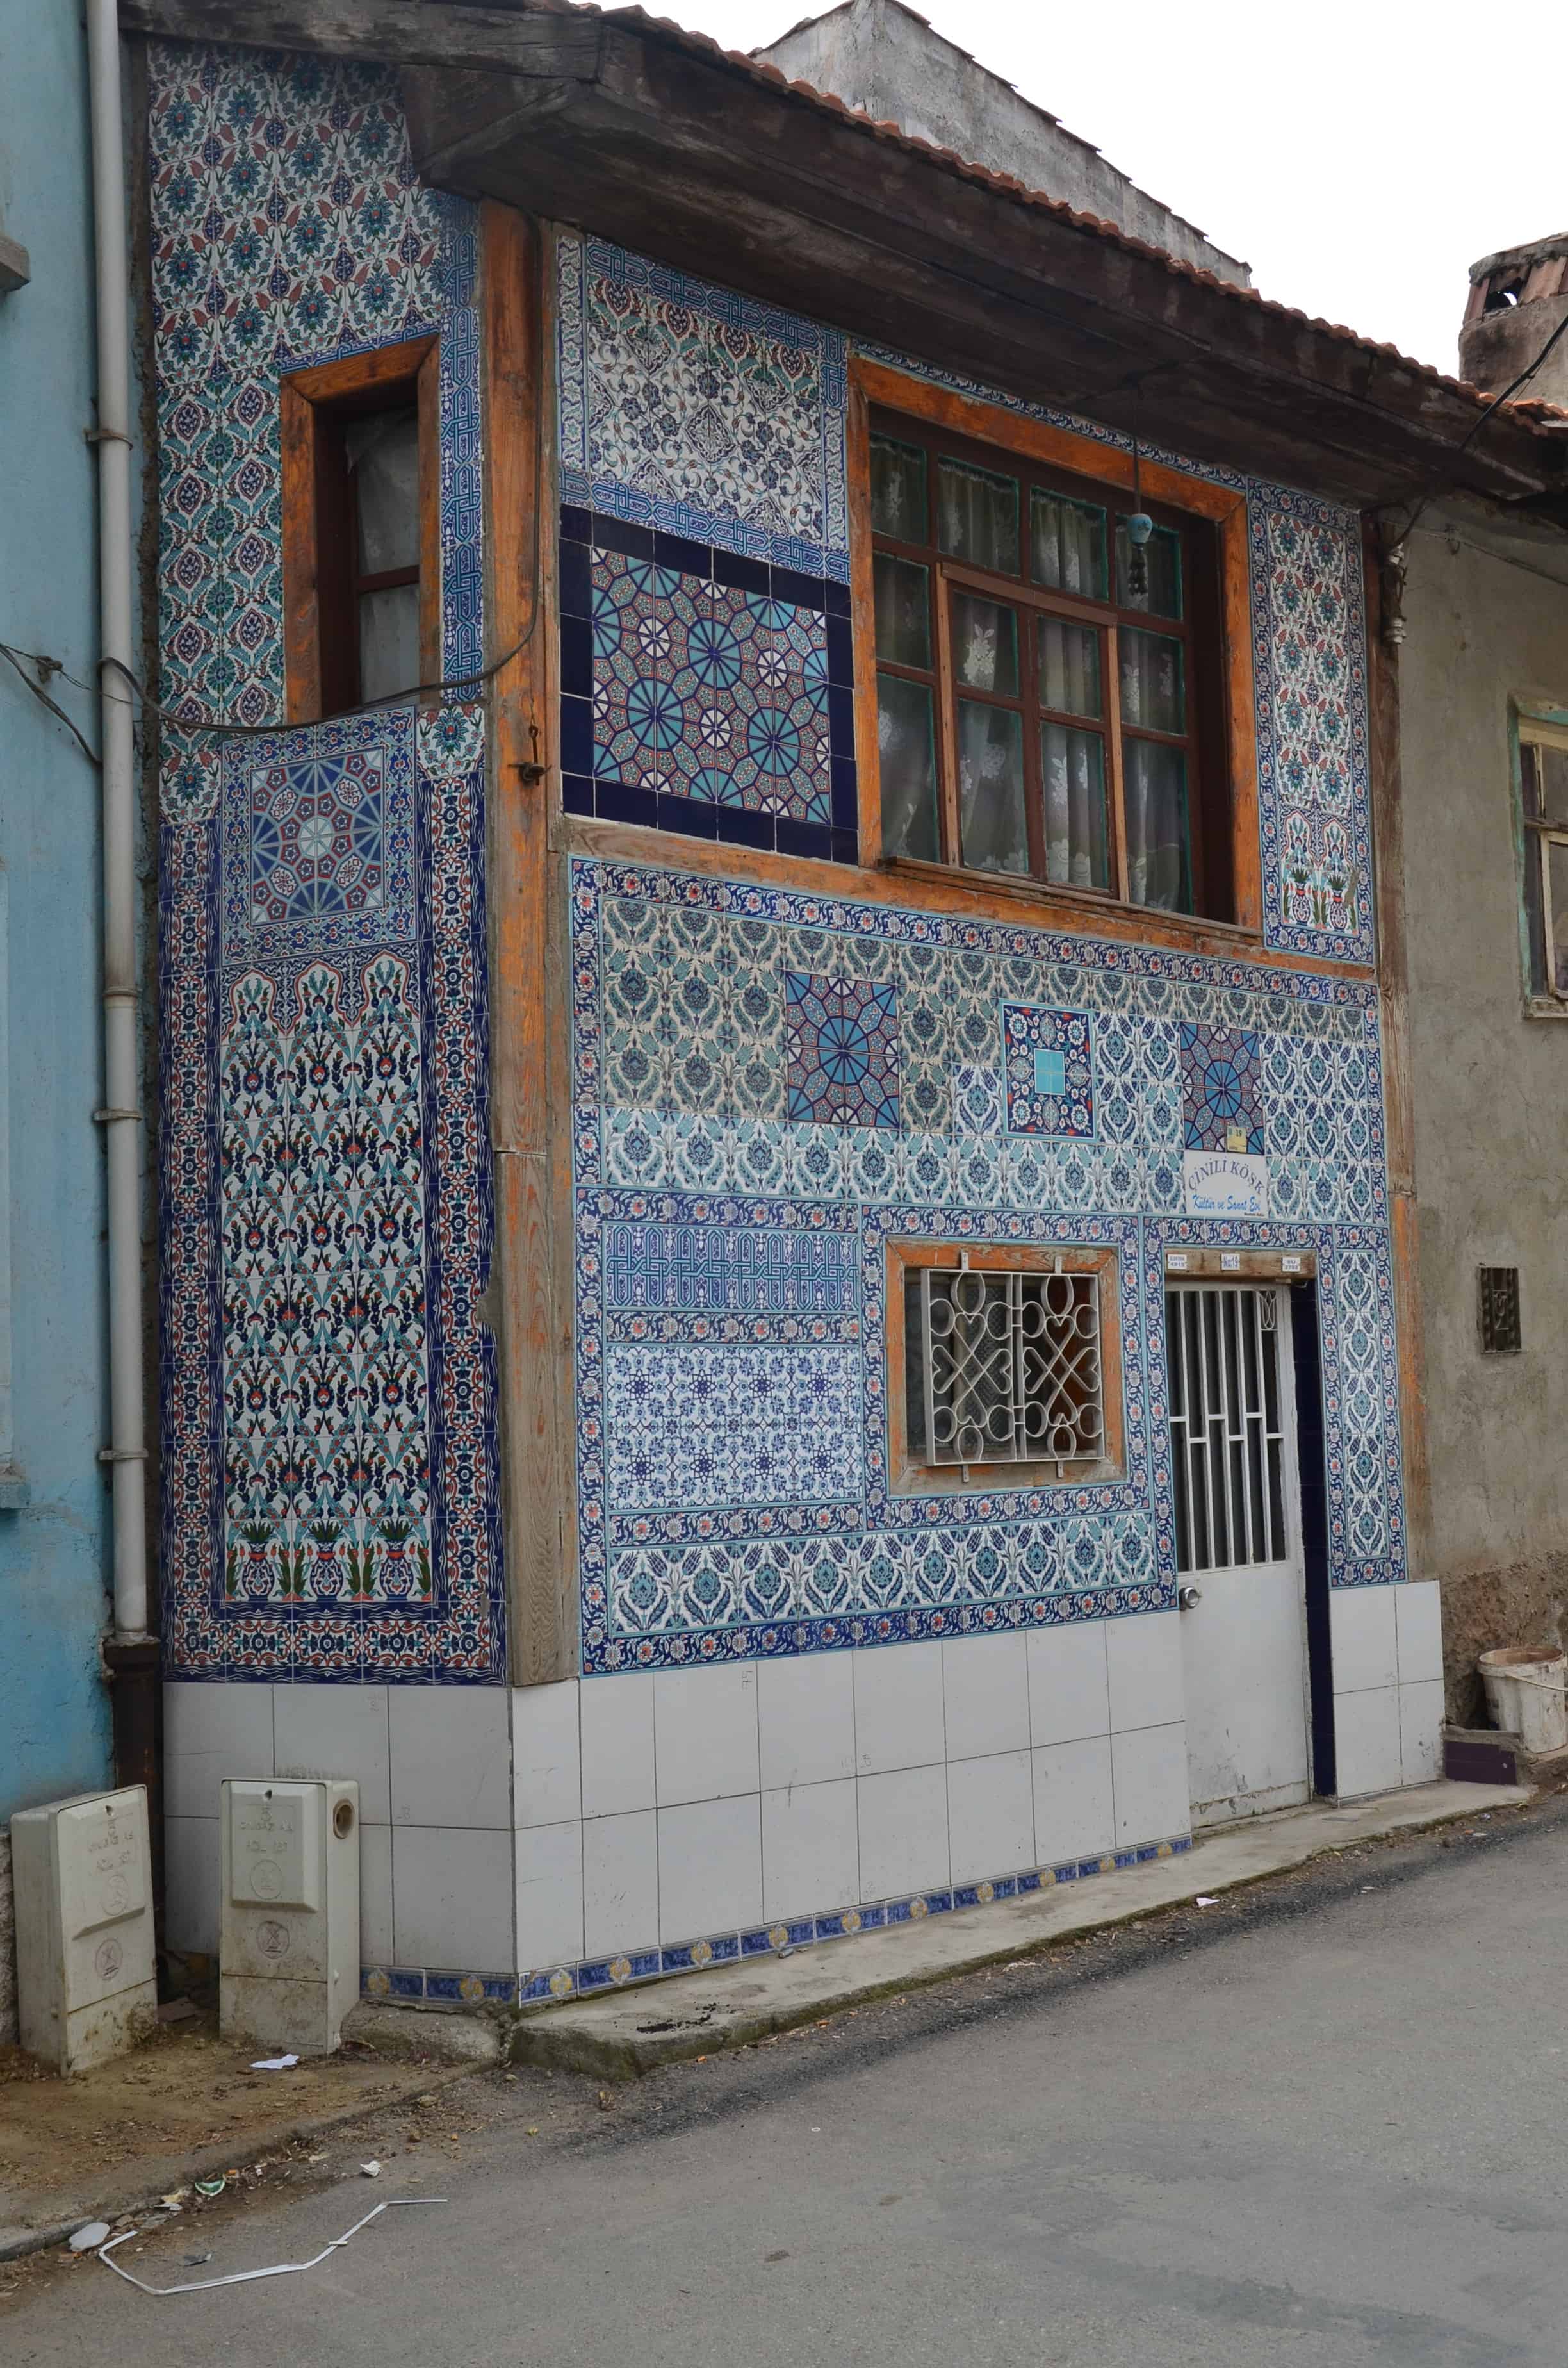 House with Kütahya tiles in Kütahya, Turkey